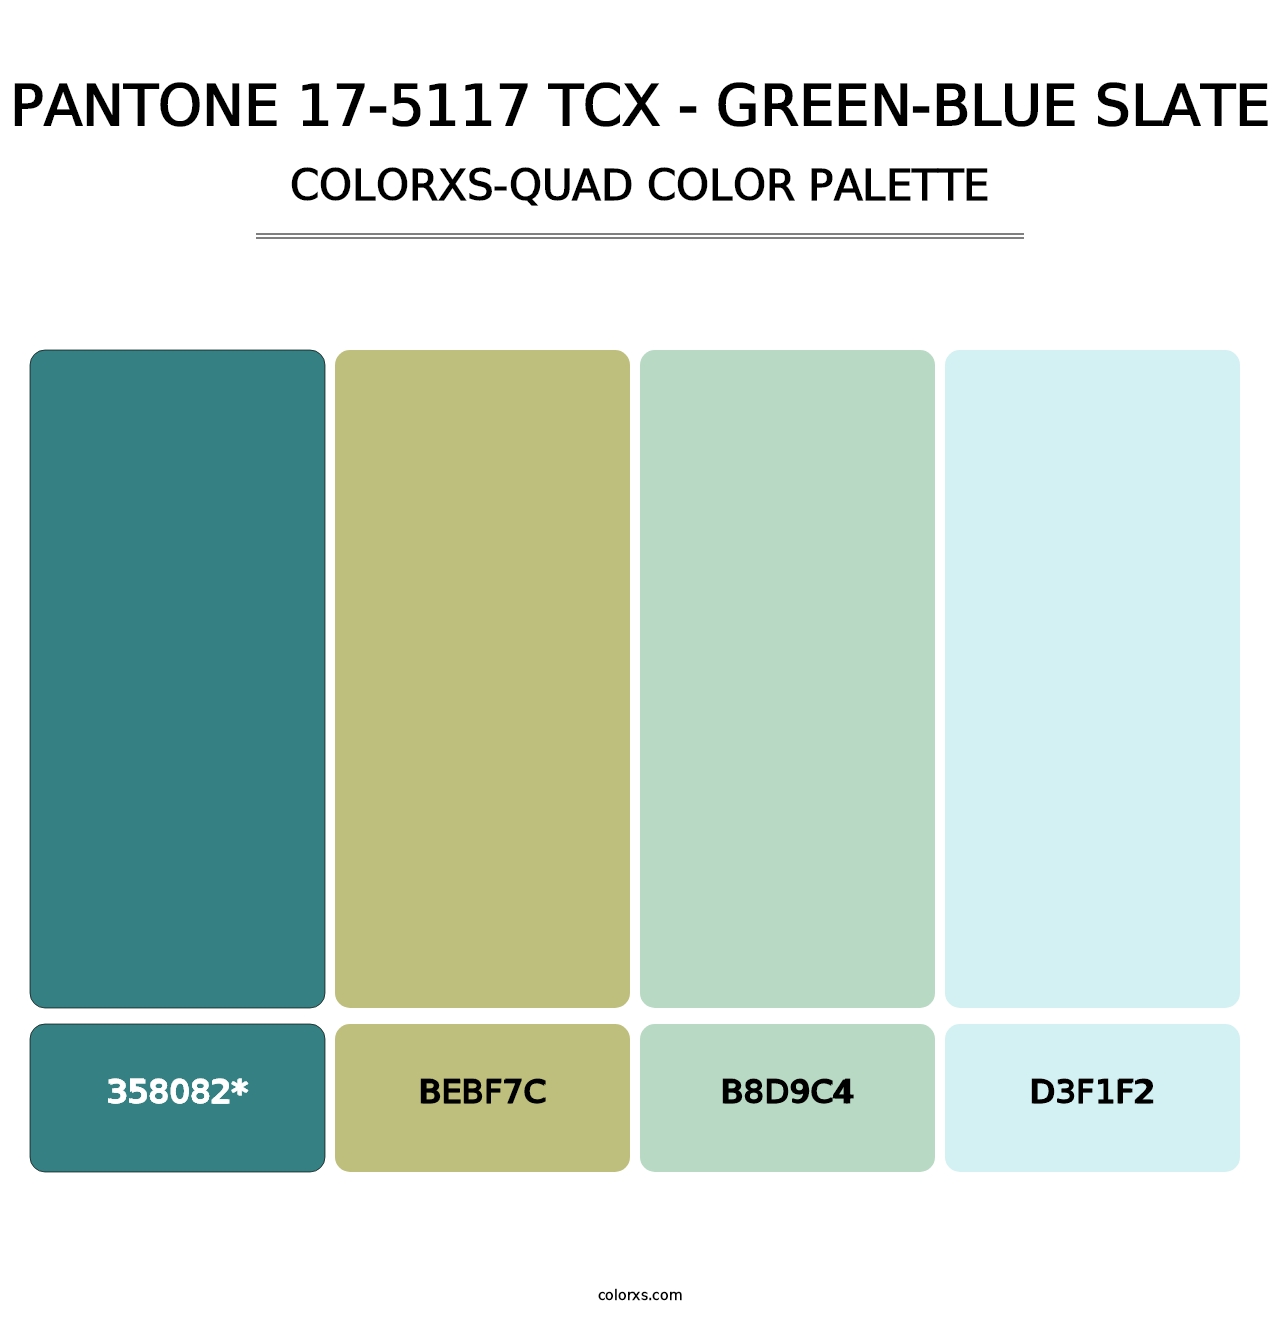 PANTONE 17-5117 TCX - Green-Blue Slate - Colorxs Quad Palette